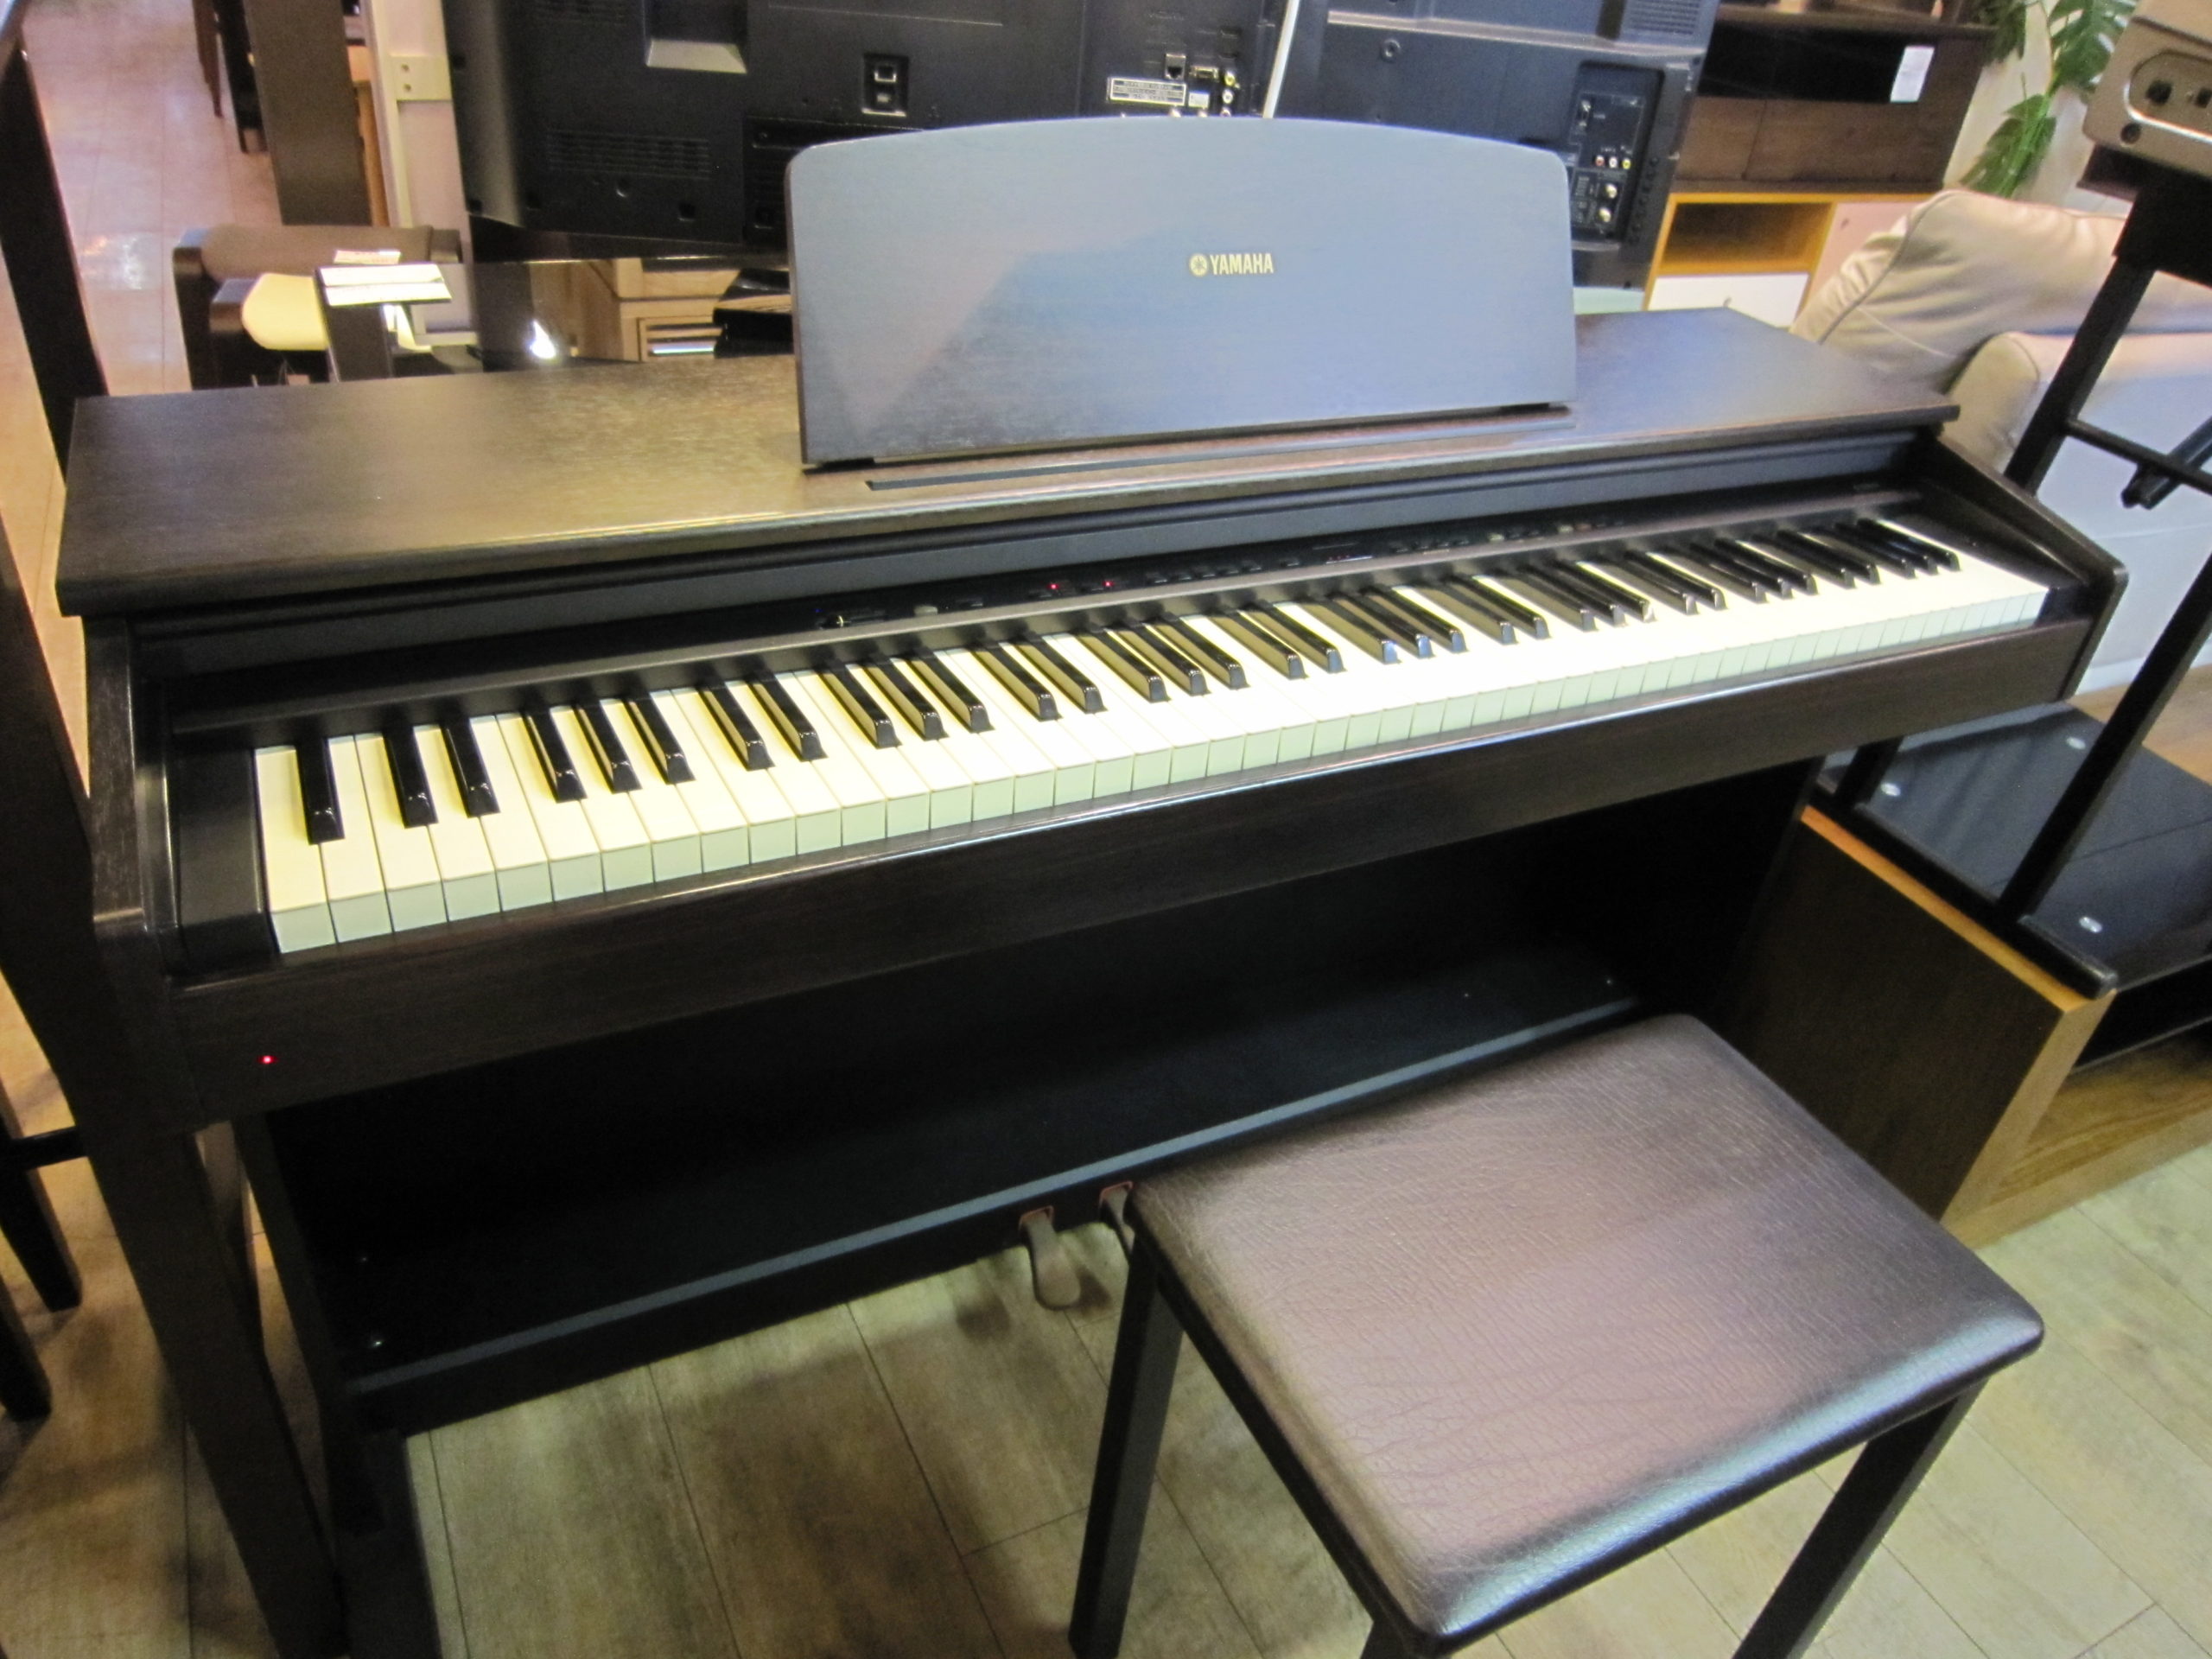 YAMAHA ヤマハ １９９９年製 電子ピアノ YDP-101 88鍵盤 イス付き 買取 